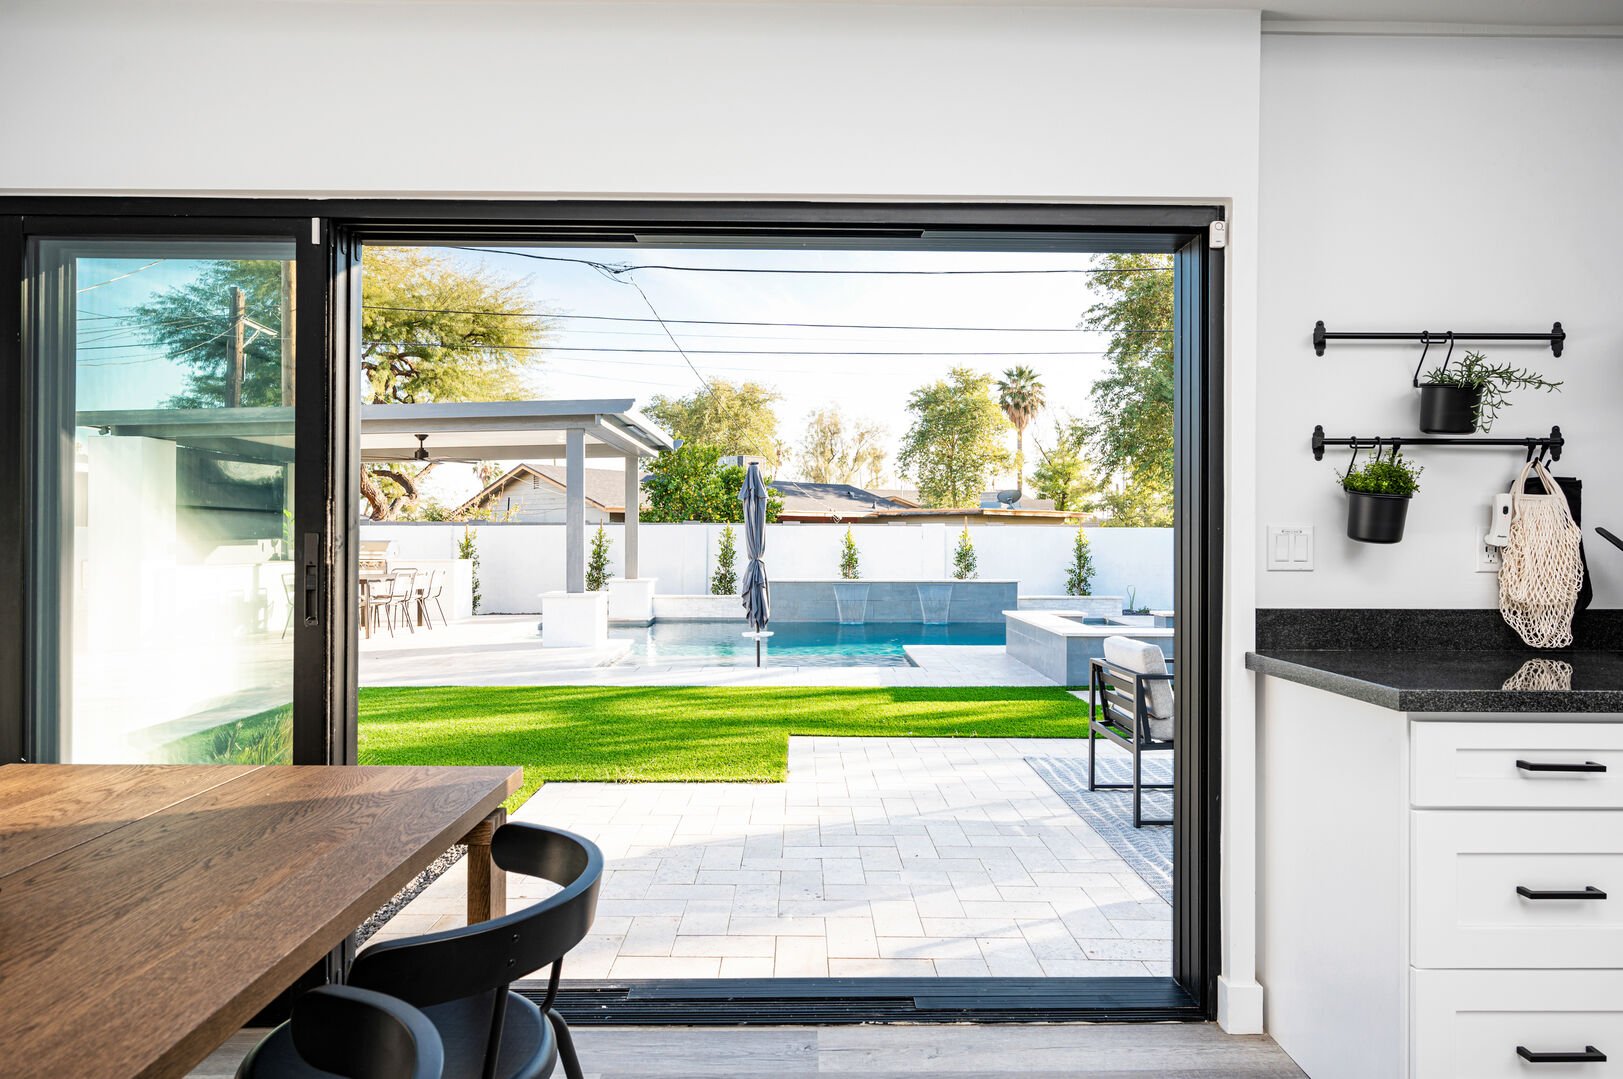 Open the sliding door to enjoy the indoor and outdoor living.